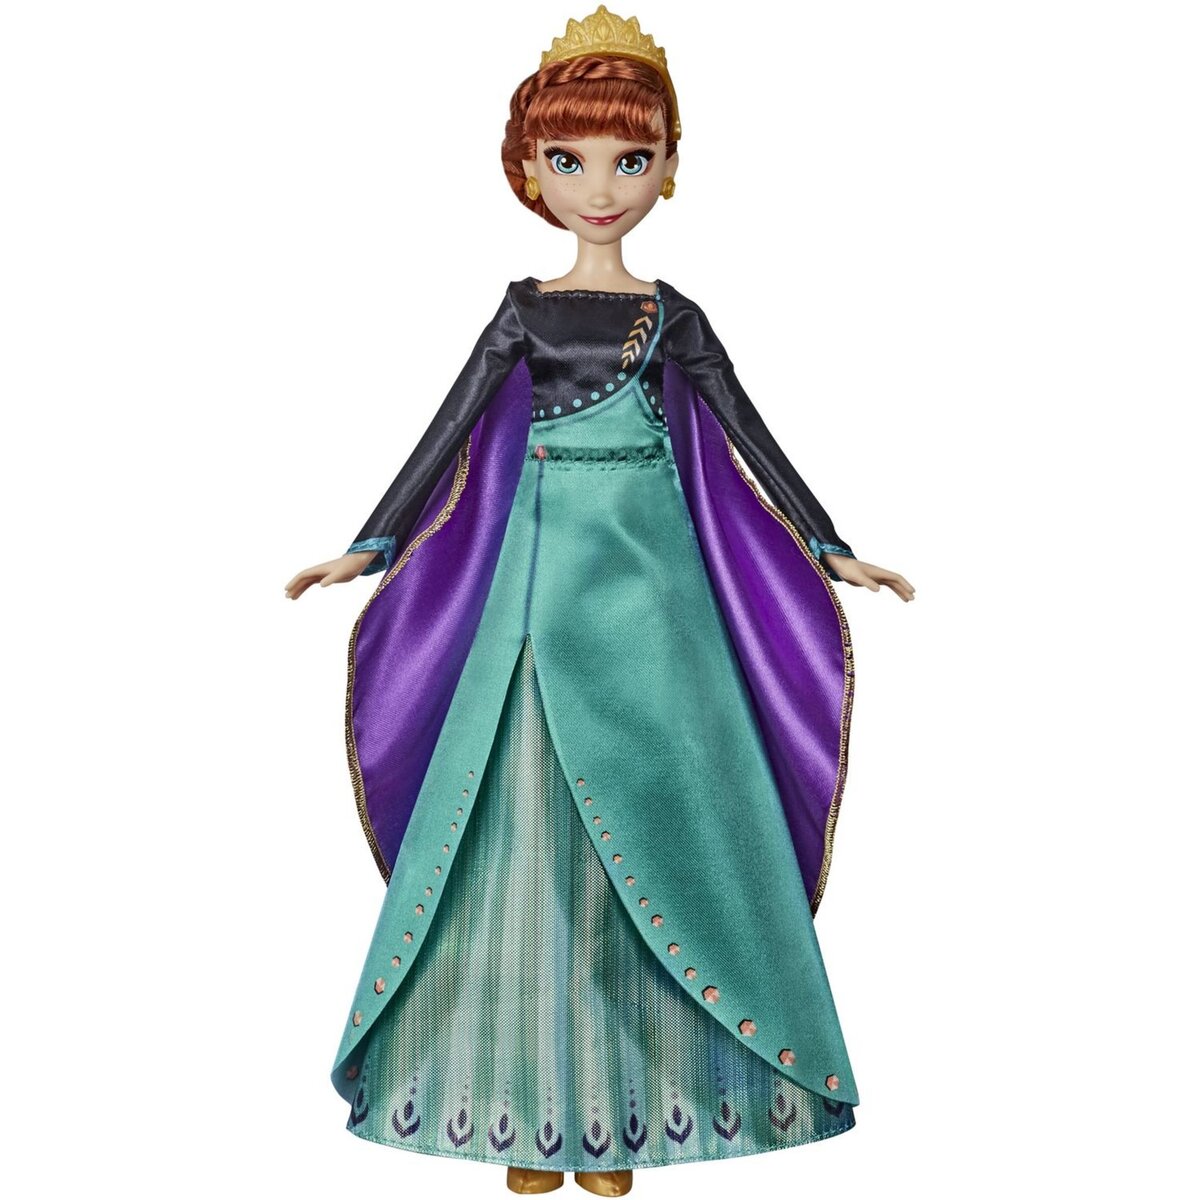 HASBRO Poupée Princesse Disney Anna chantante 27 cm La reine des neiges